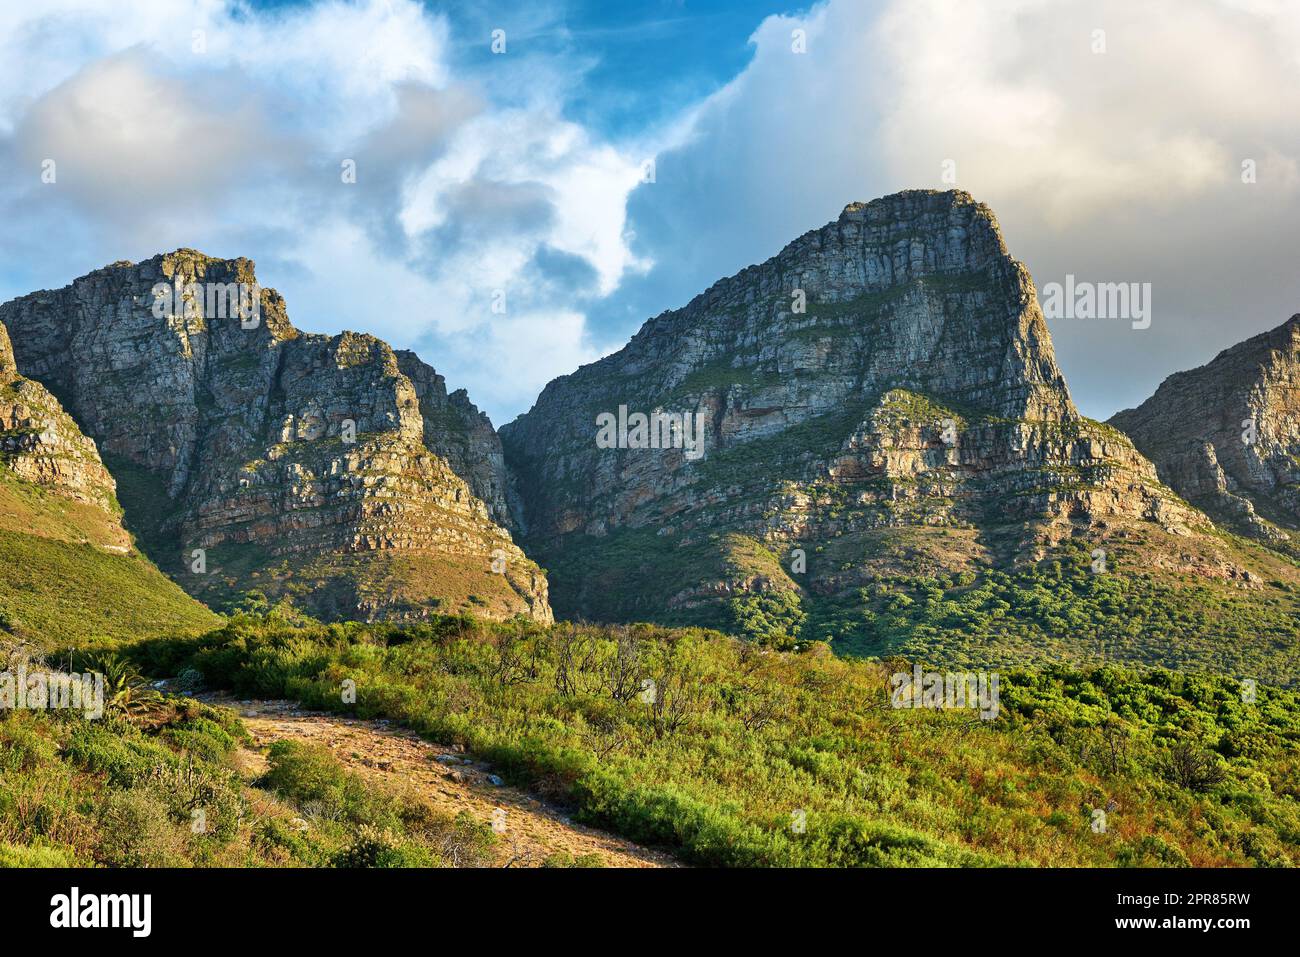 Landschaft eines Berges in Kapstadt, Südafrika am Tag. Felsiger Berggipfel mit Grün vor bewölktem Himmel. Unterhalb der beliebten Touristenattraktion und Abenteuerwanderweg in der Nähe des Tafelbergs Stockfoto